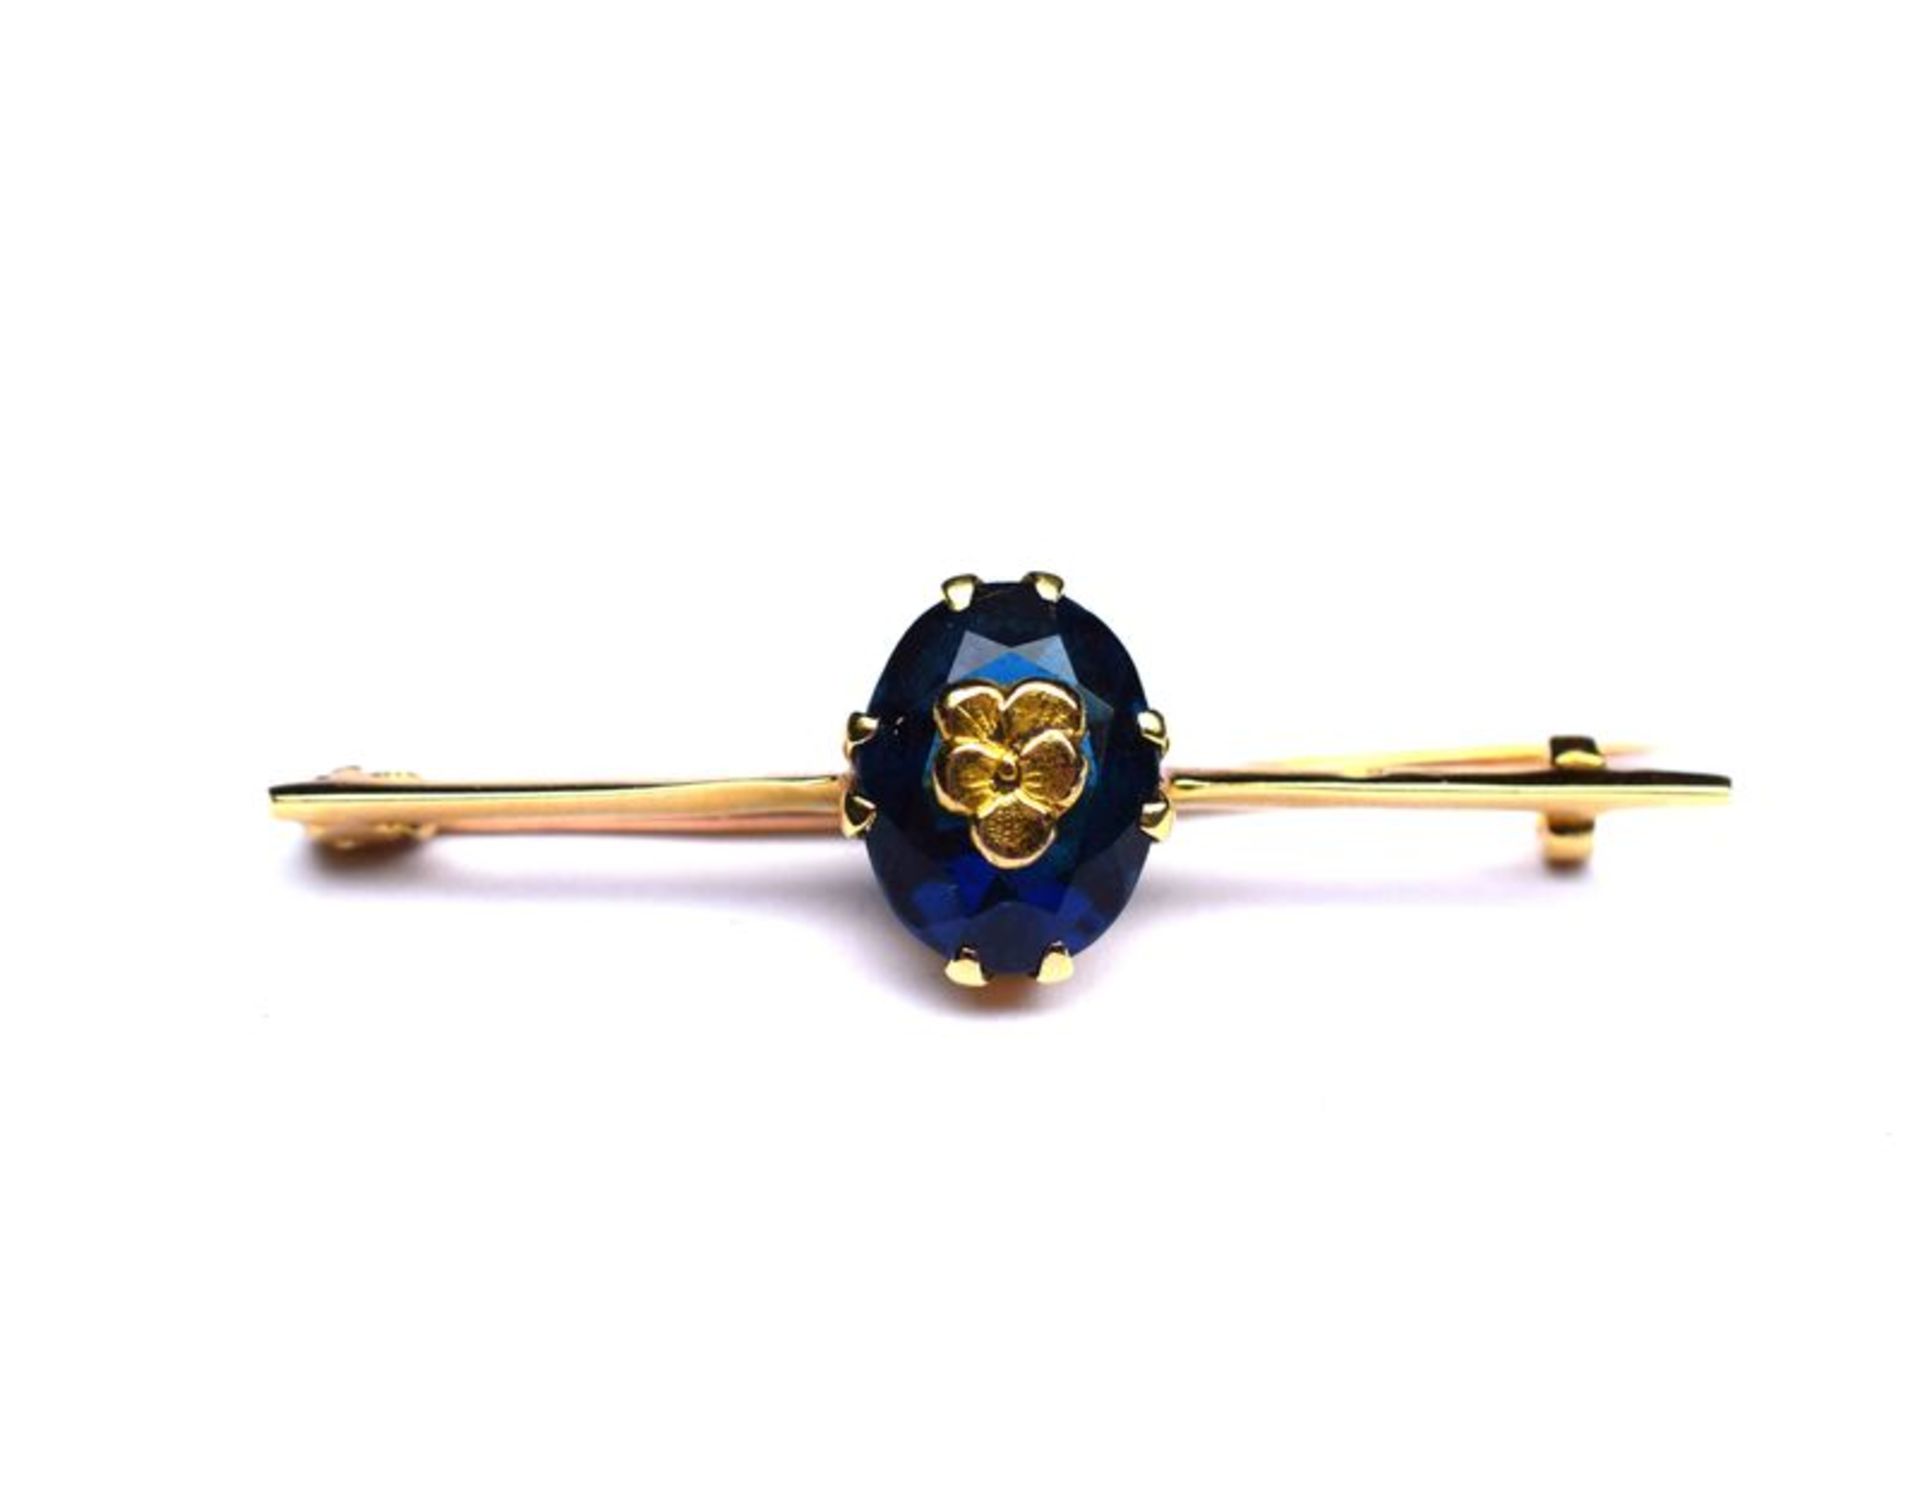 Broche or jaune centrée d'une pierre bleue incrustée d'un motif or -or 2,6 g. -